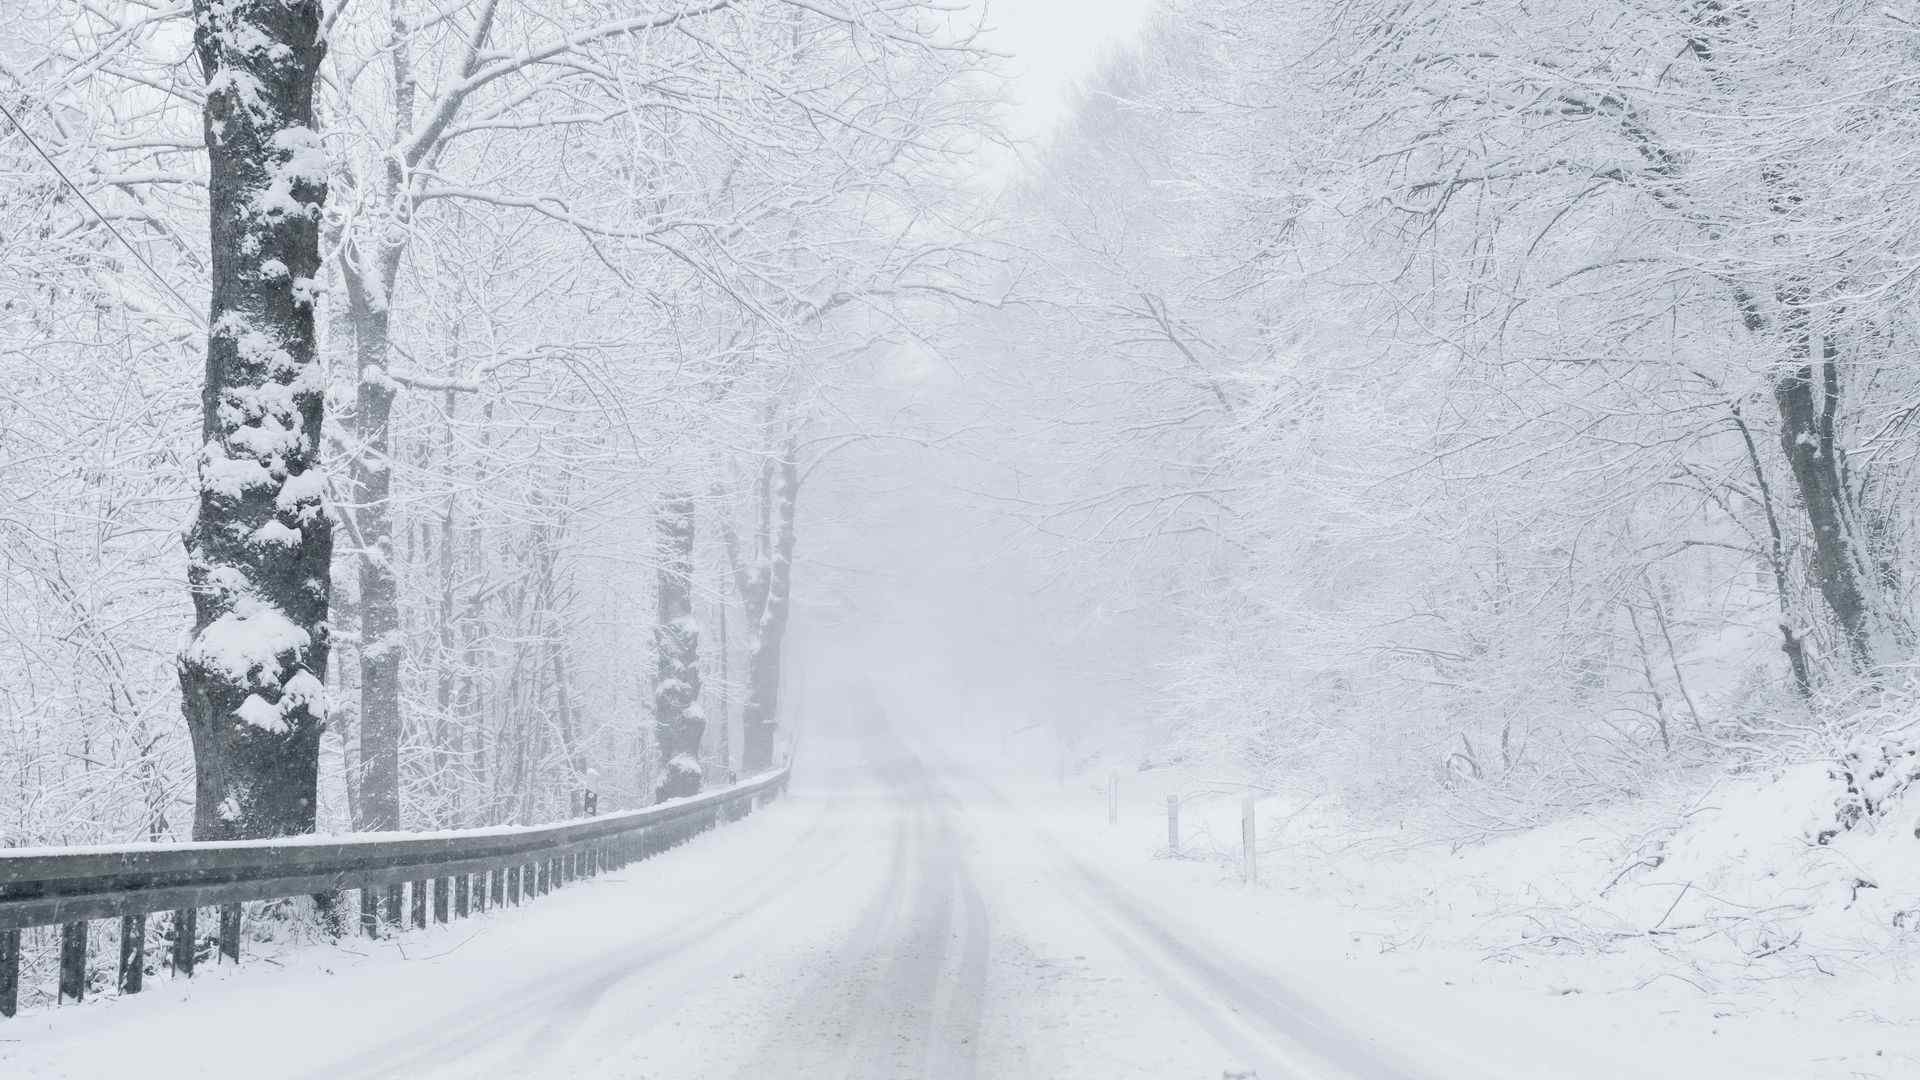 冬日大雪纷飞的马路风景图片高清壁纸